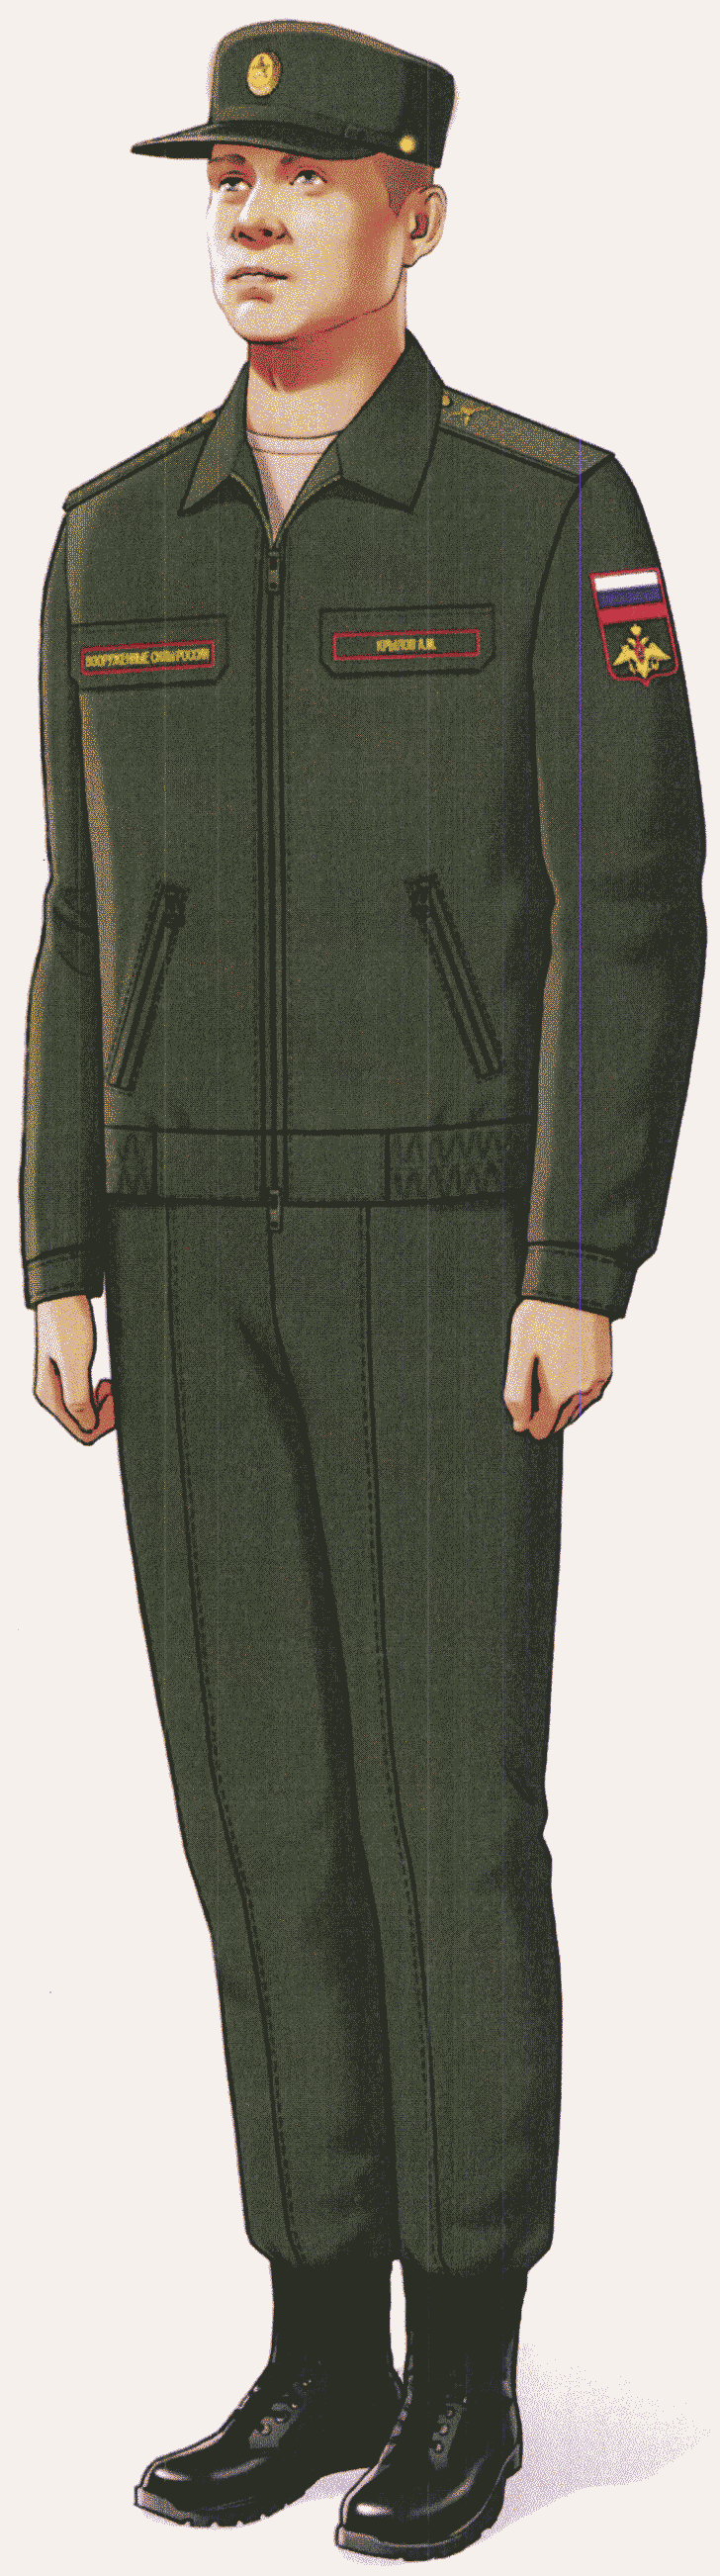 Форма одежды офицеров